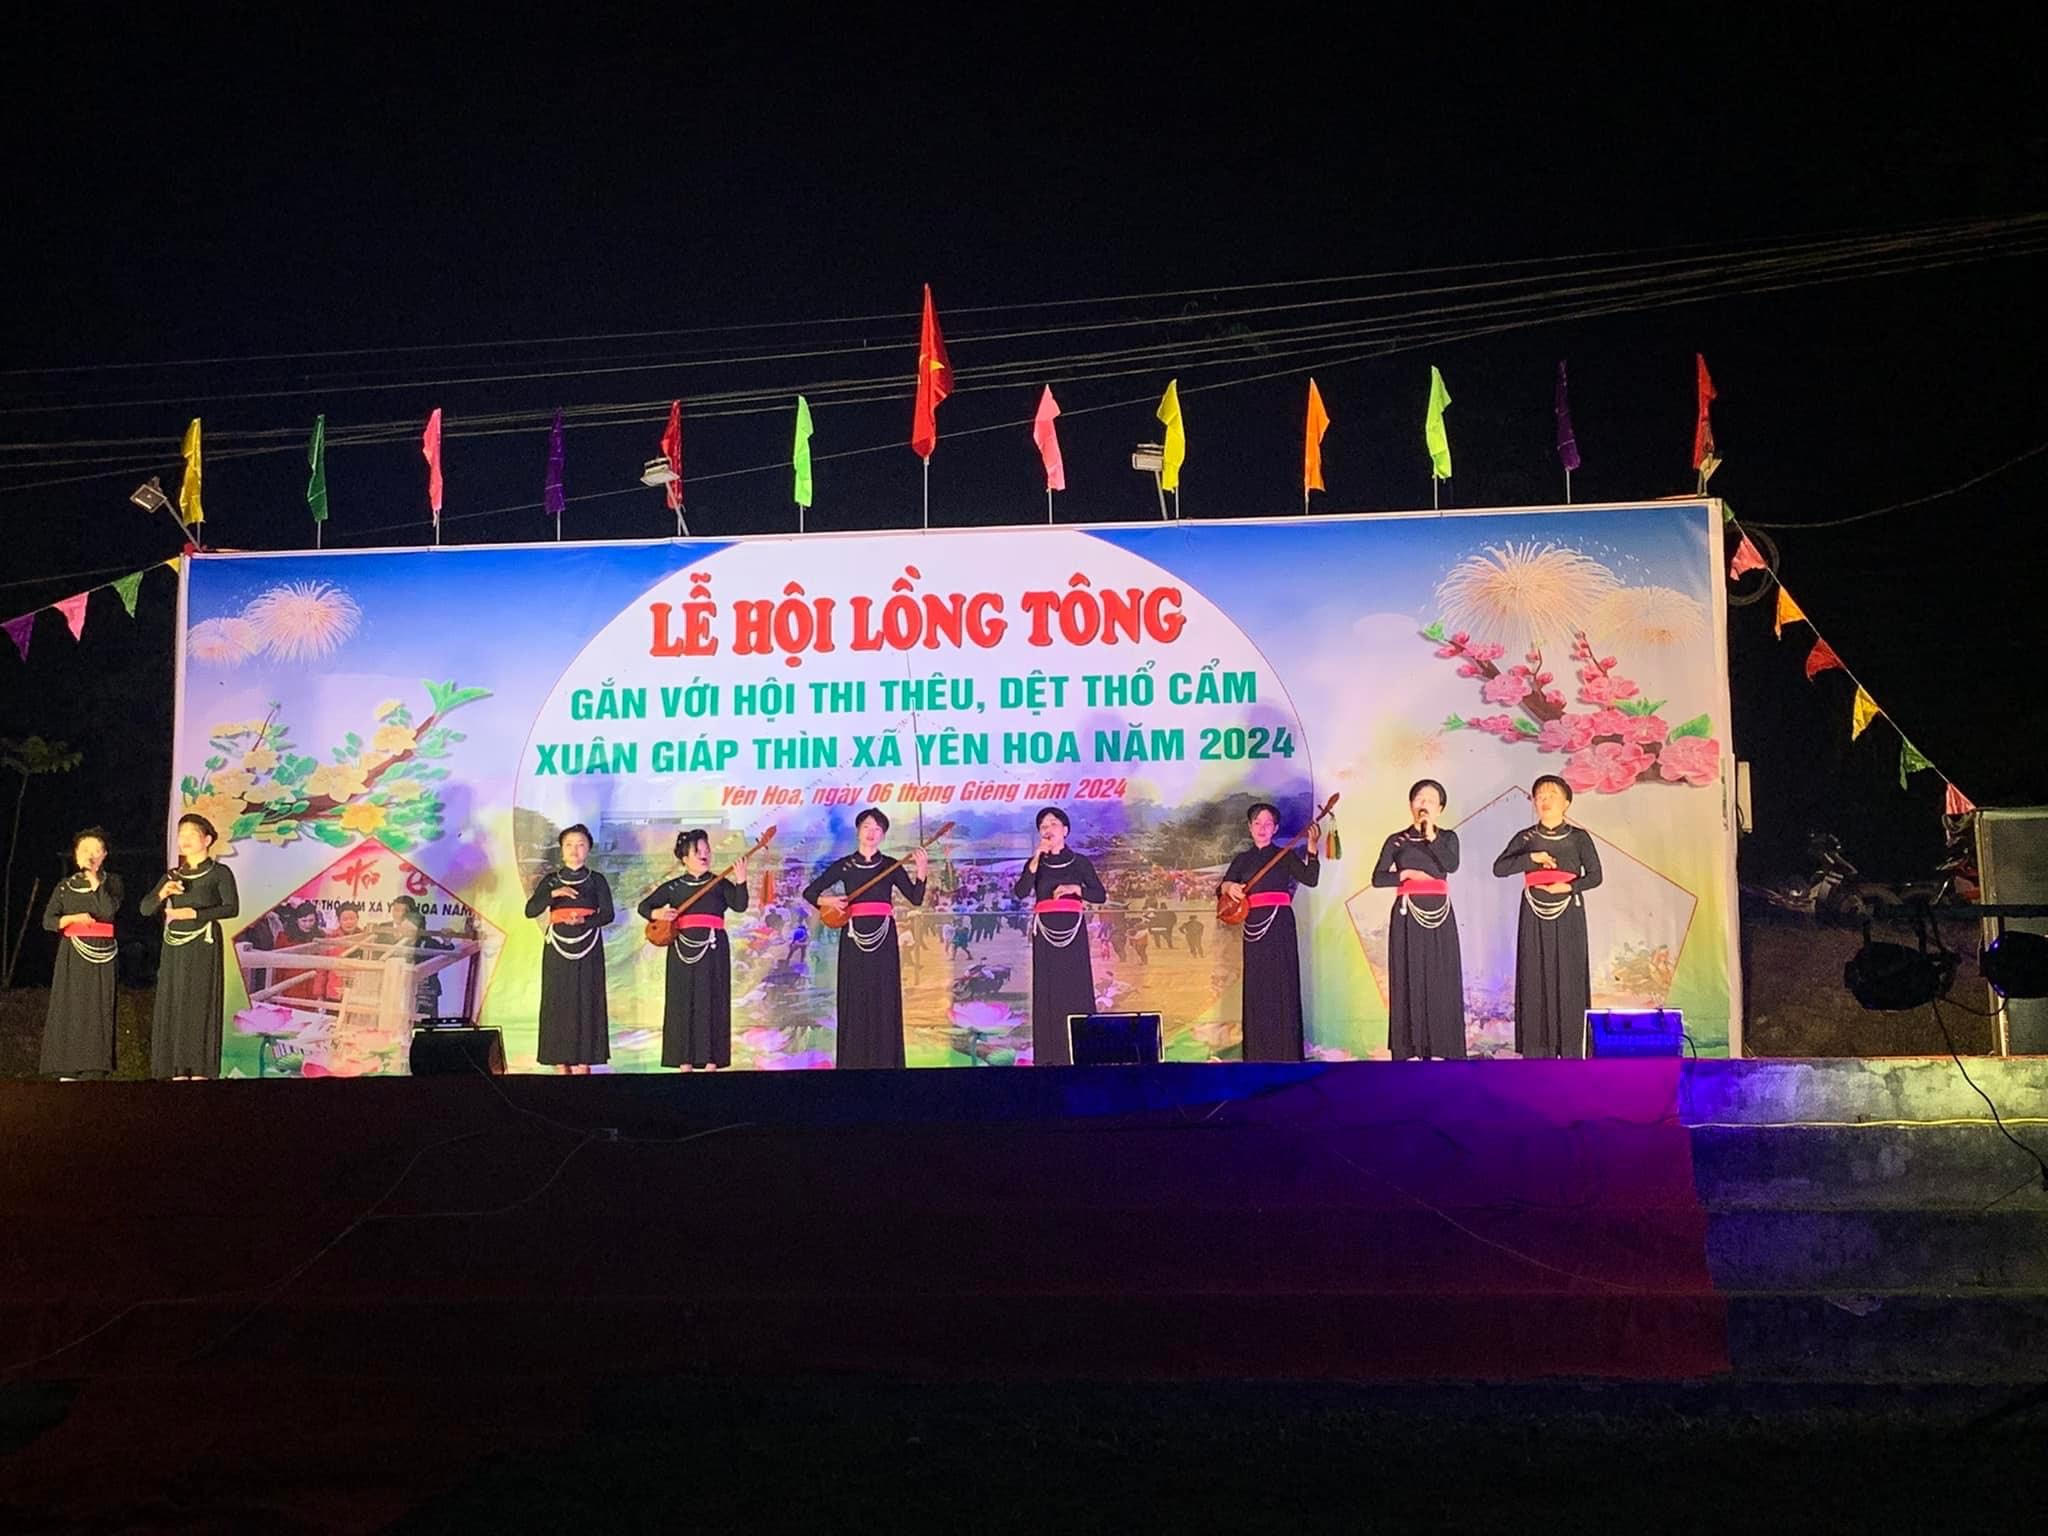 Lễ hội Lồng tông: Nét văn hóa độc đáo của người Tày xứ Tuyên